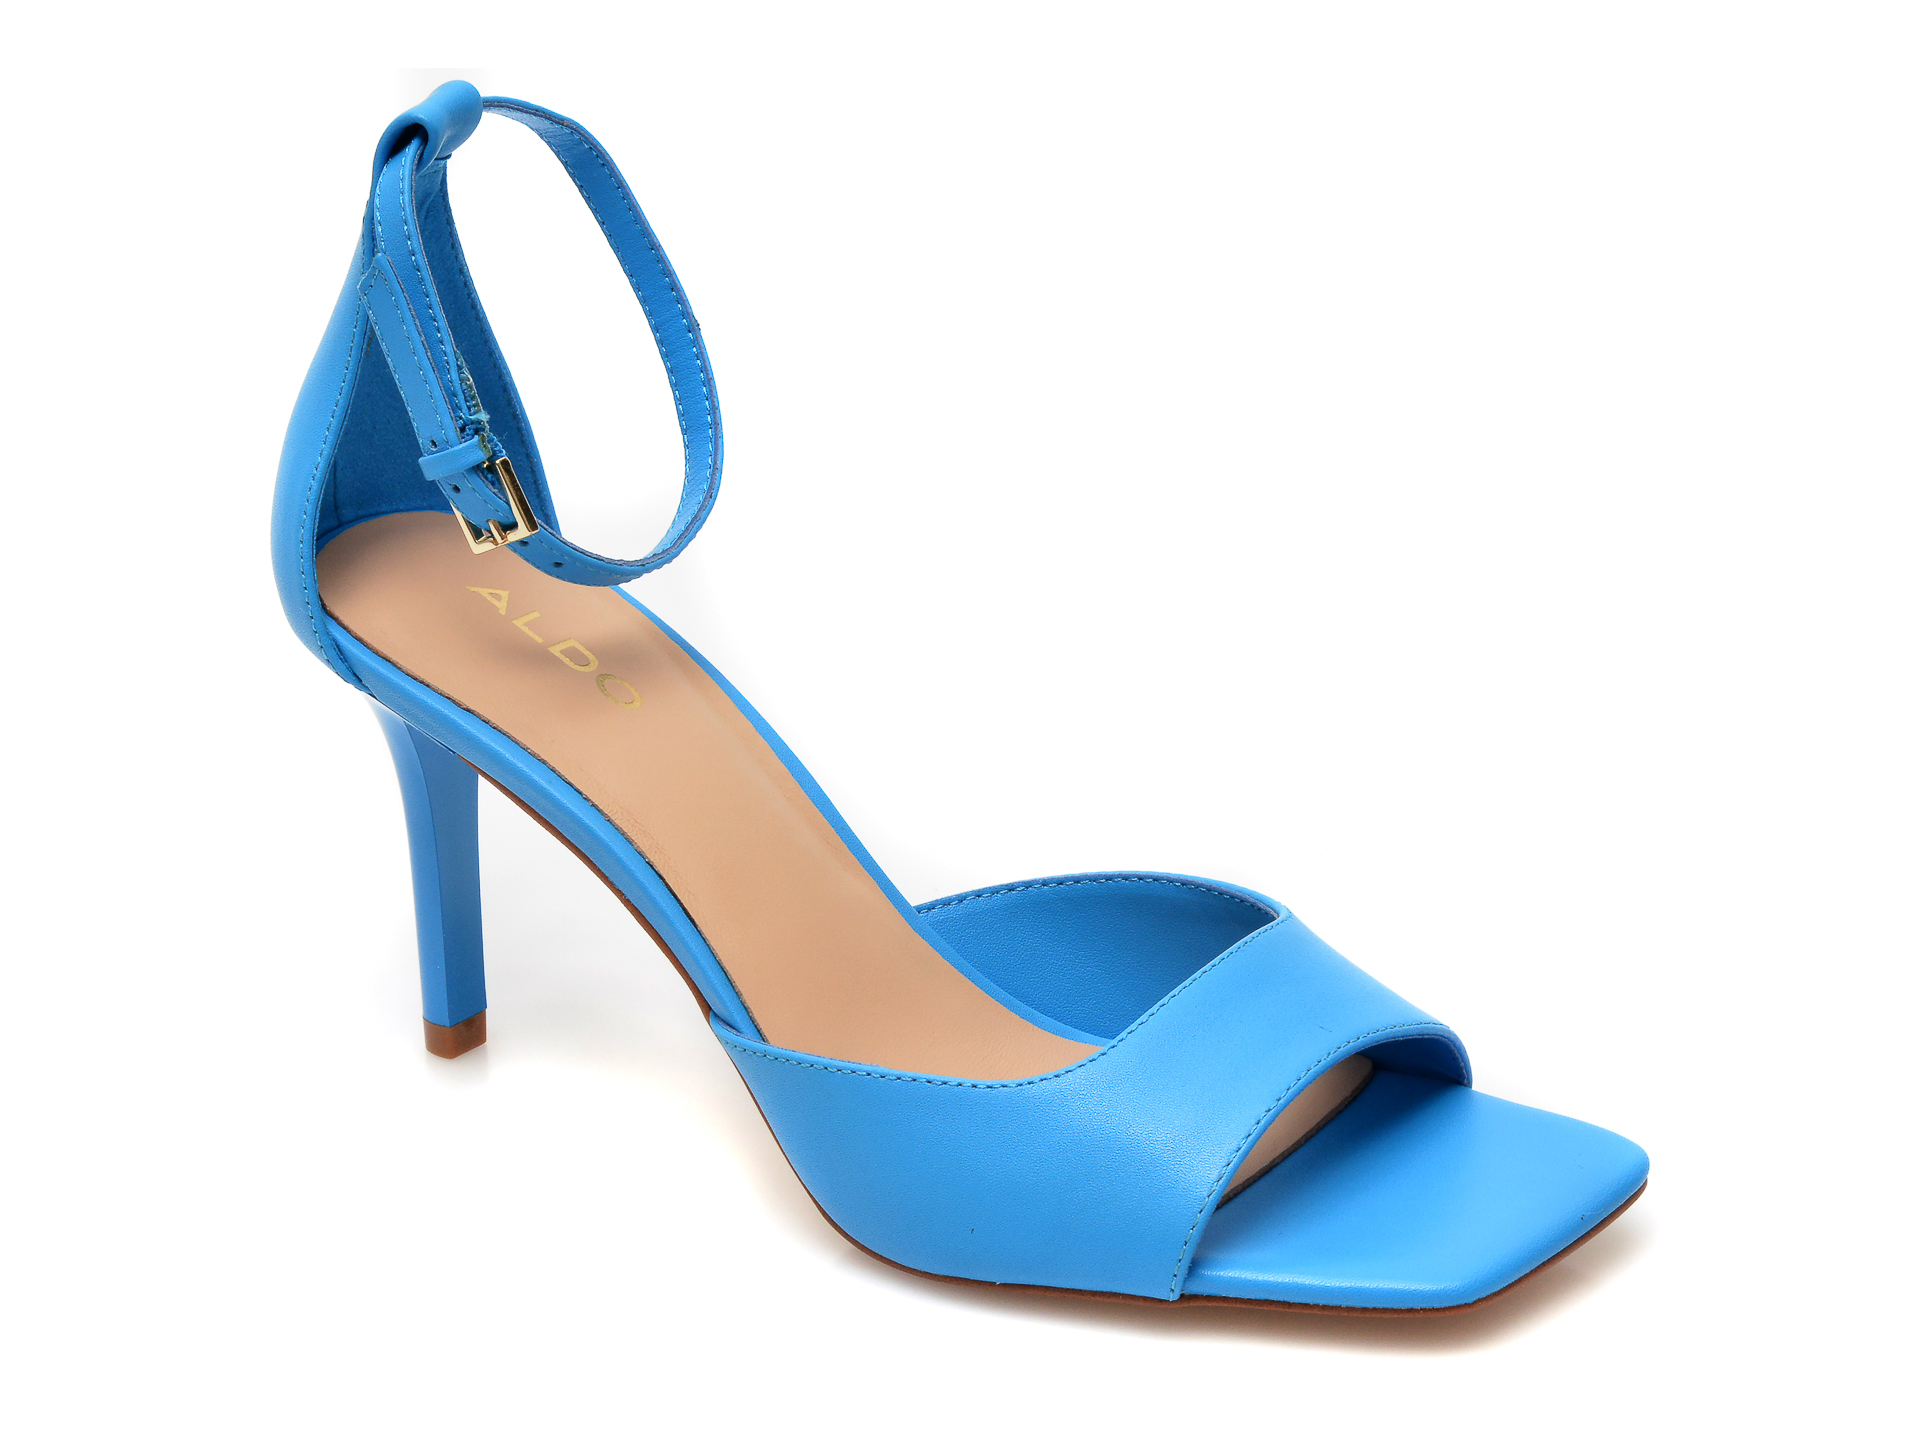 Sandale ALDO albastre, Asteama400, din piele naturala Aldo